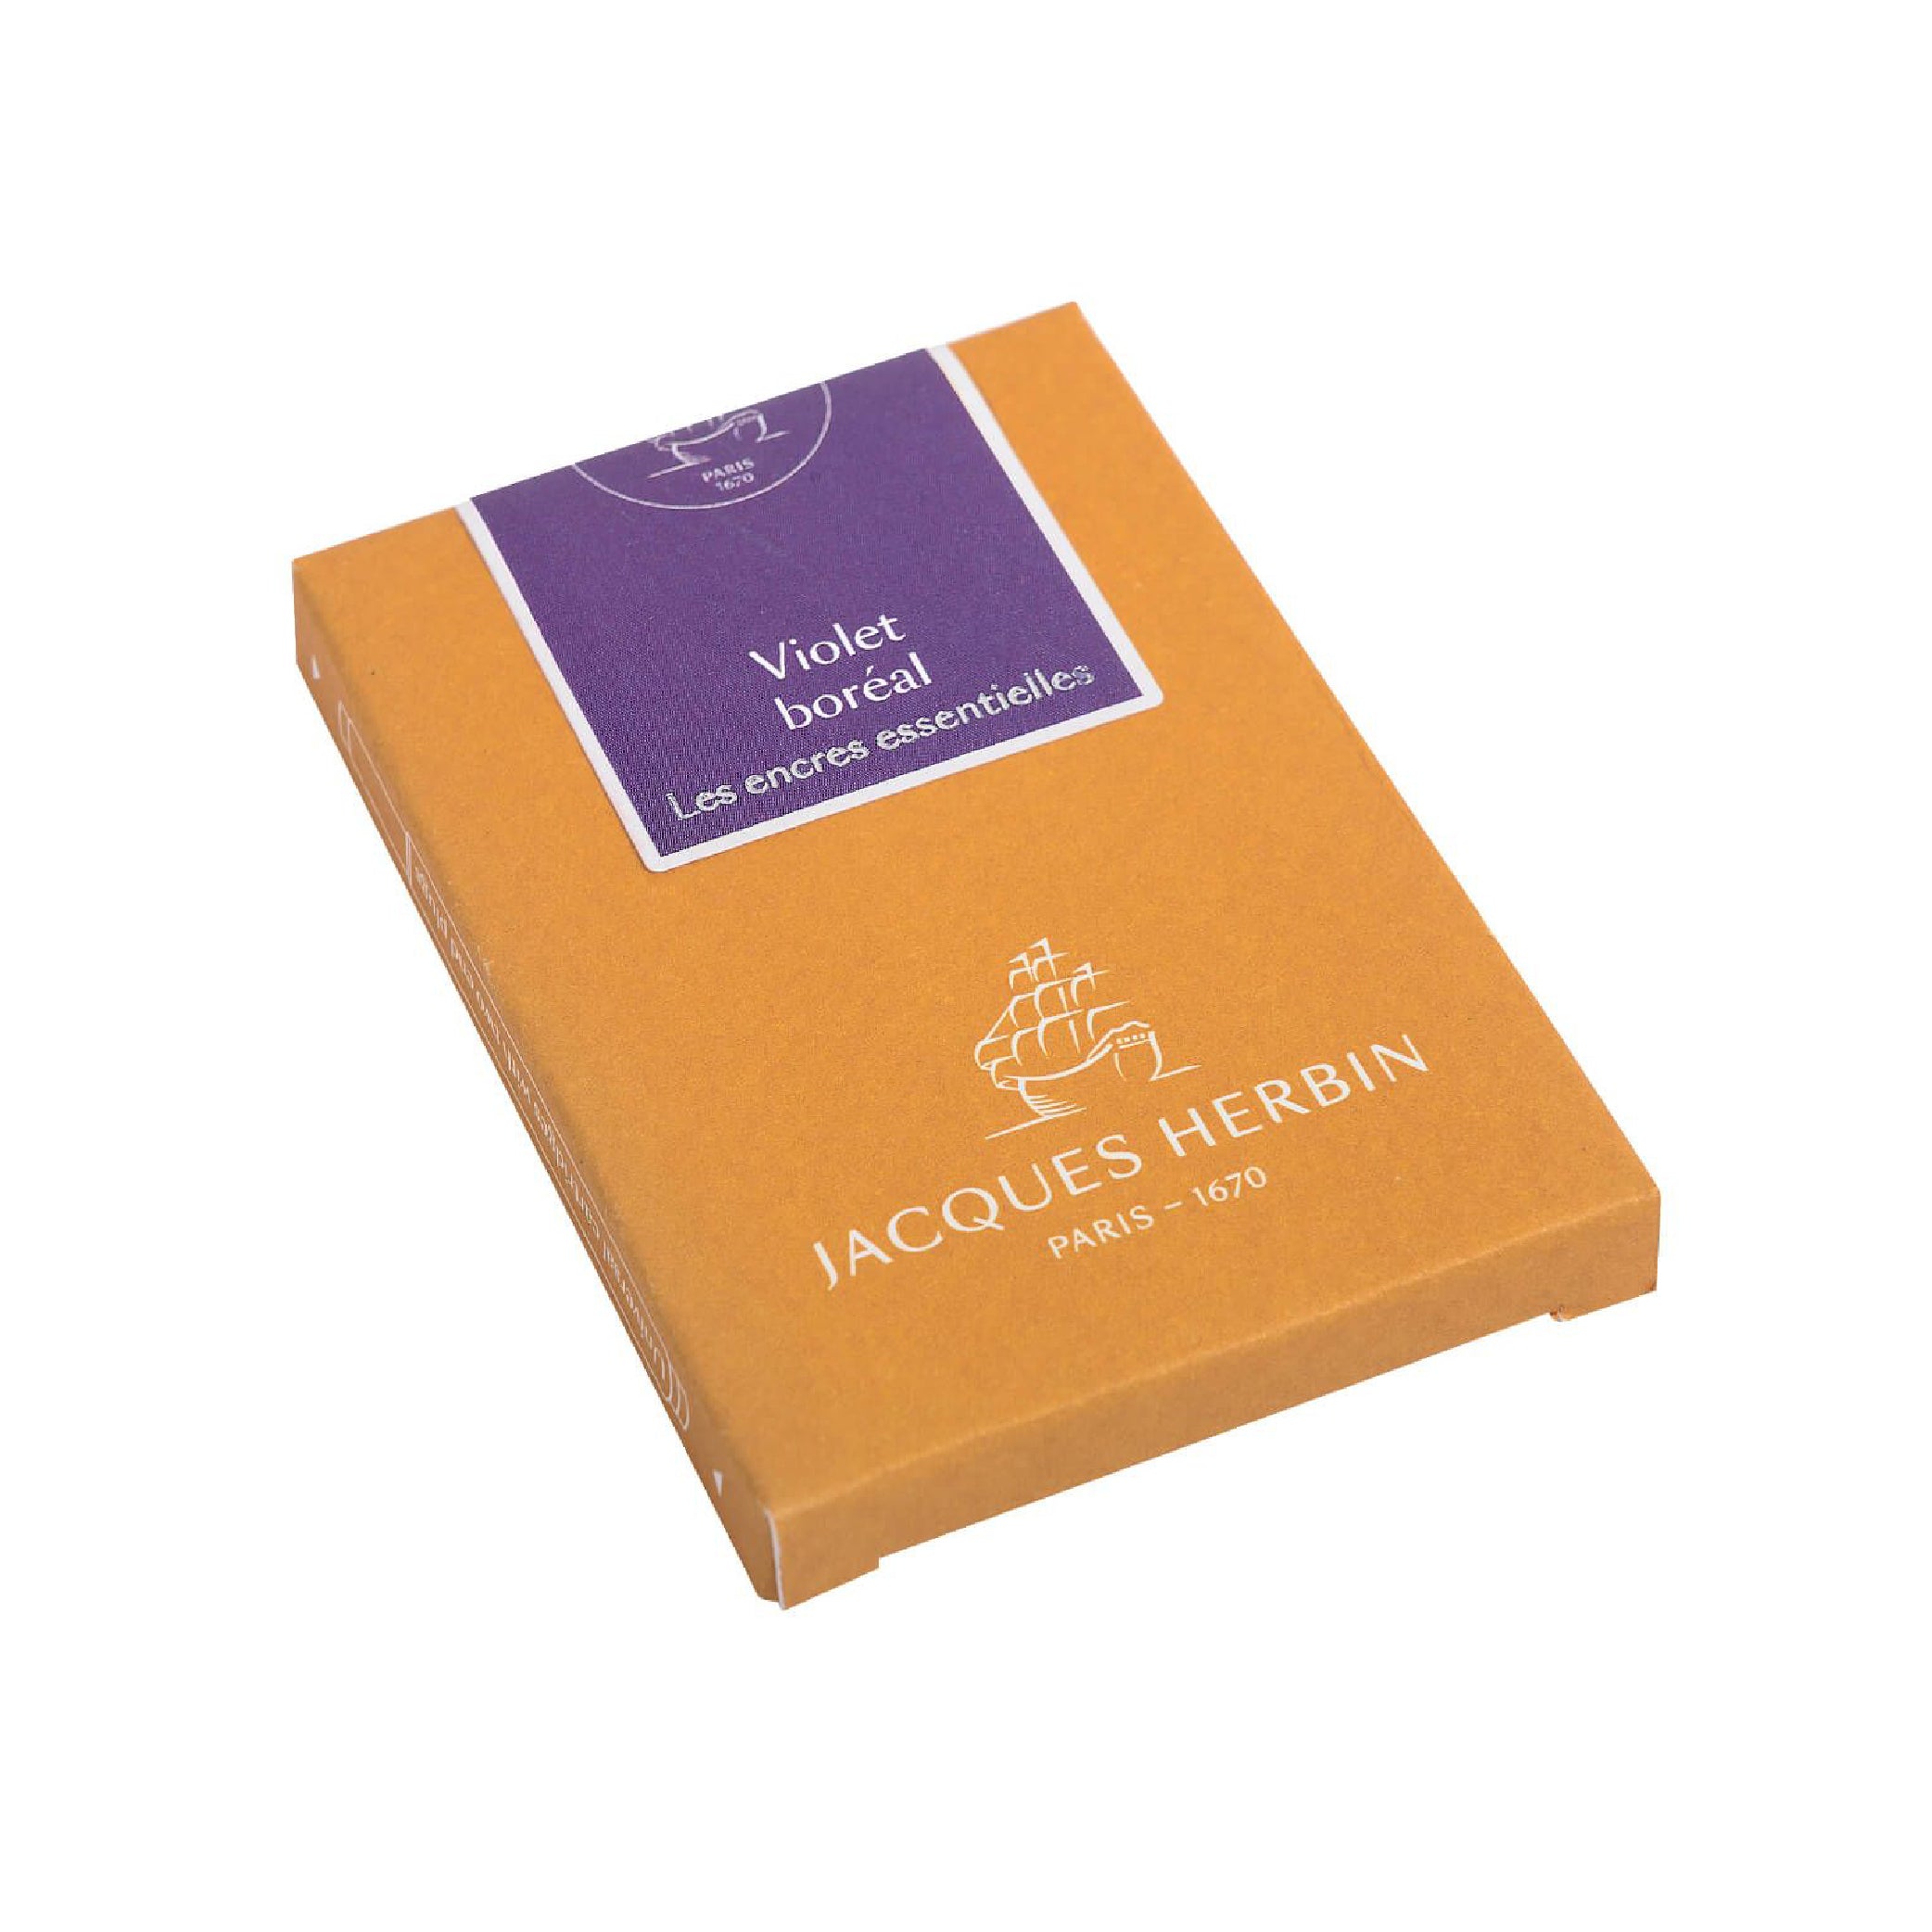 JACQUES HERBIN Essentials Cartridges 7s Violet Boréal Default Title